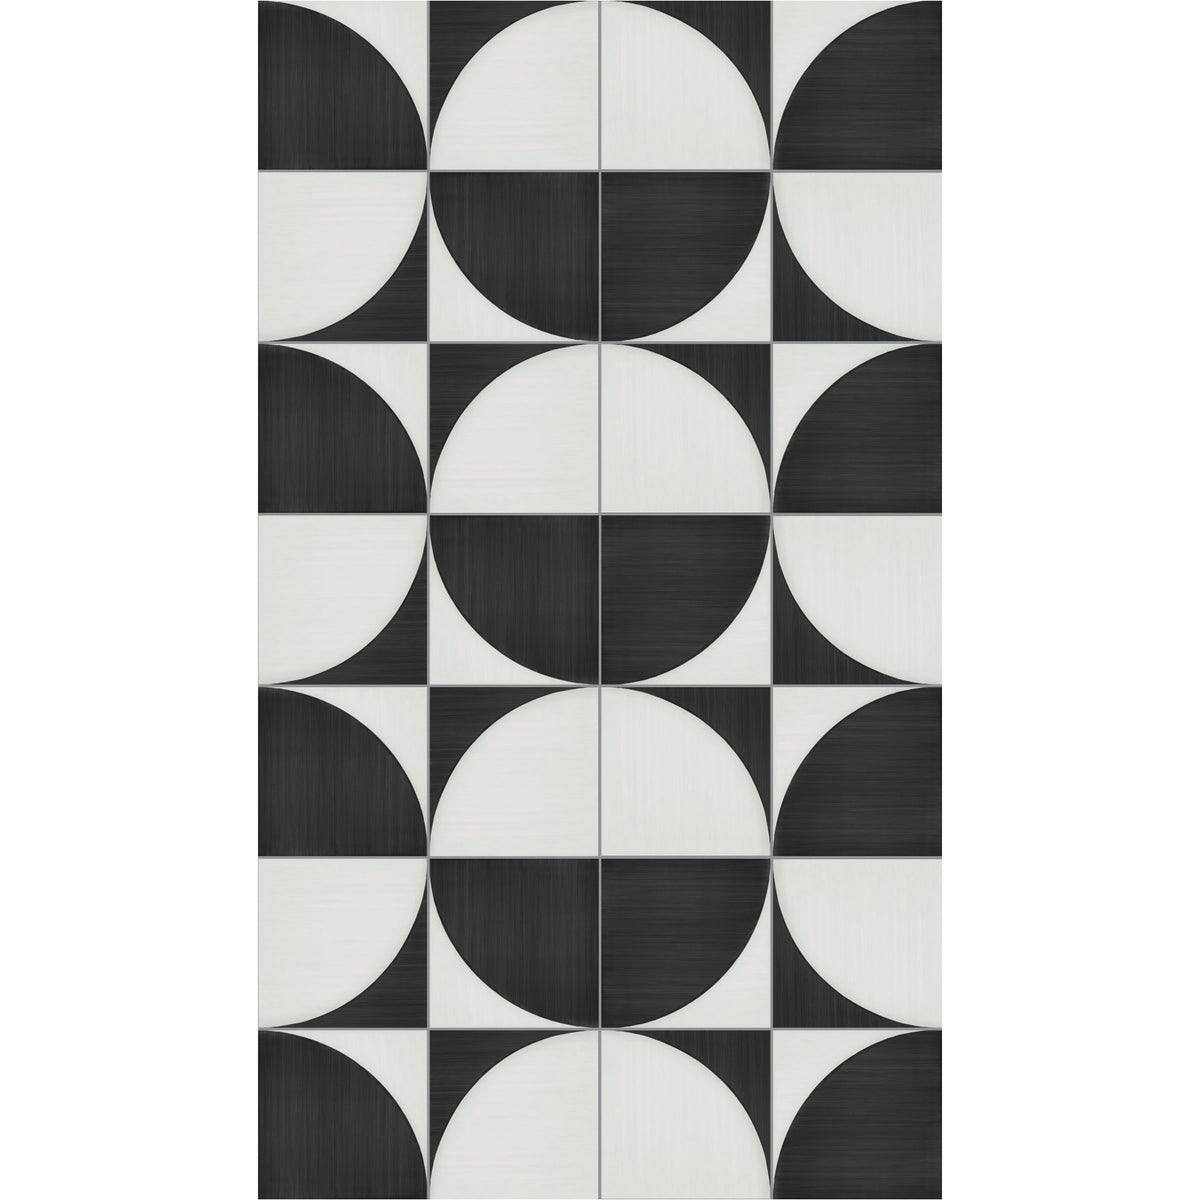 Marazzi - Scenario 8 in. x 8 in. Glazed Porcelain Tile - SR27 Nero Convex